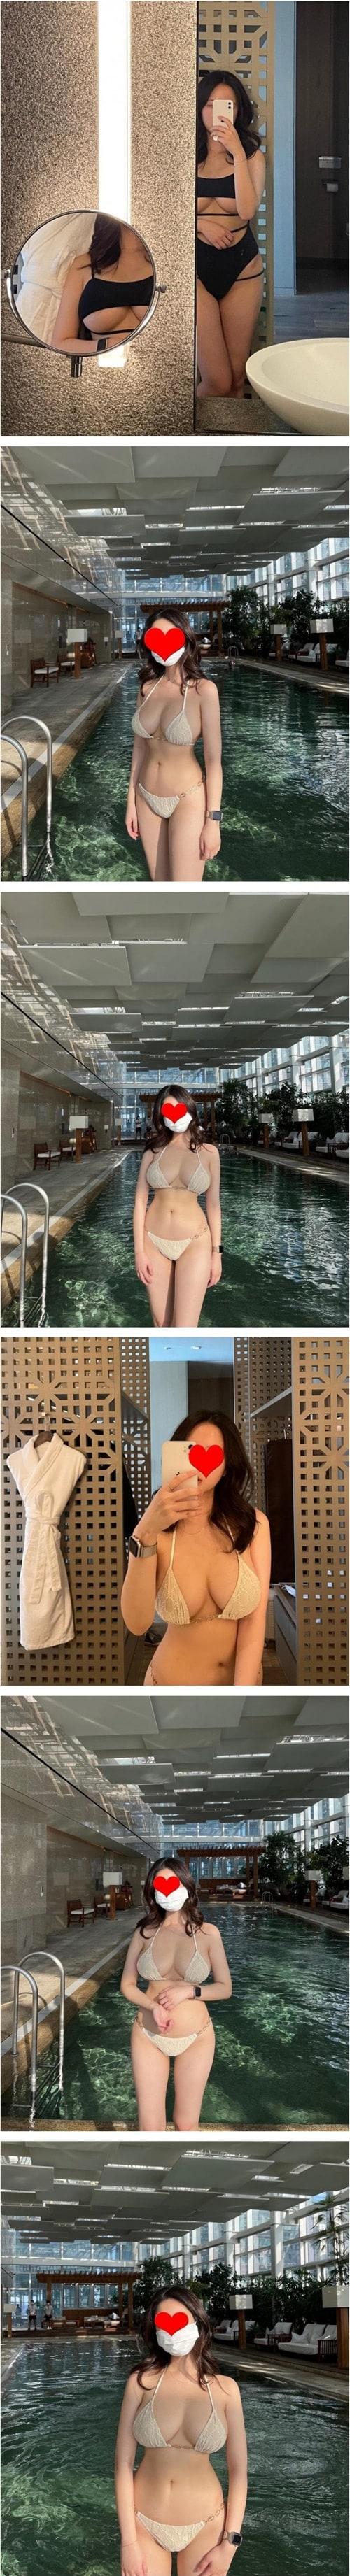 Bikini proof shot